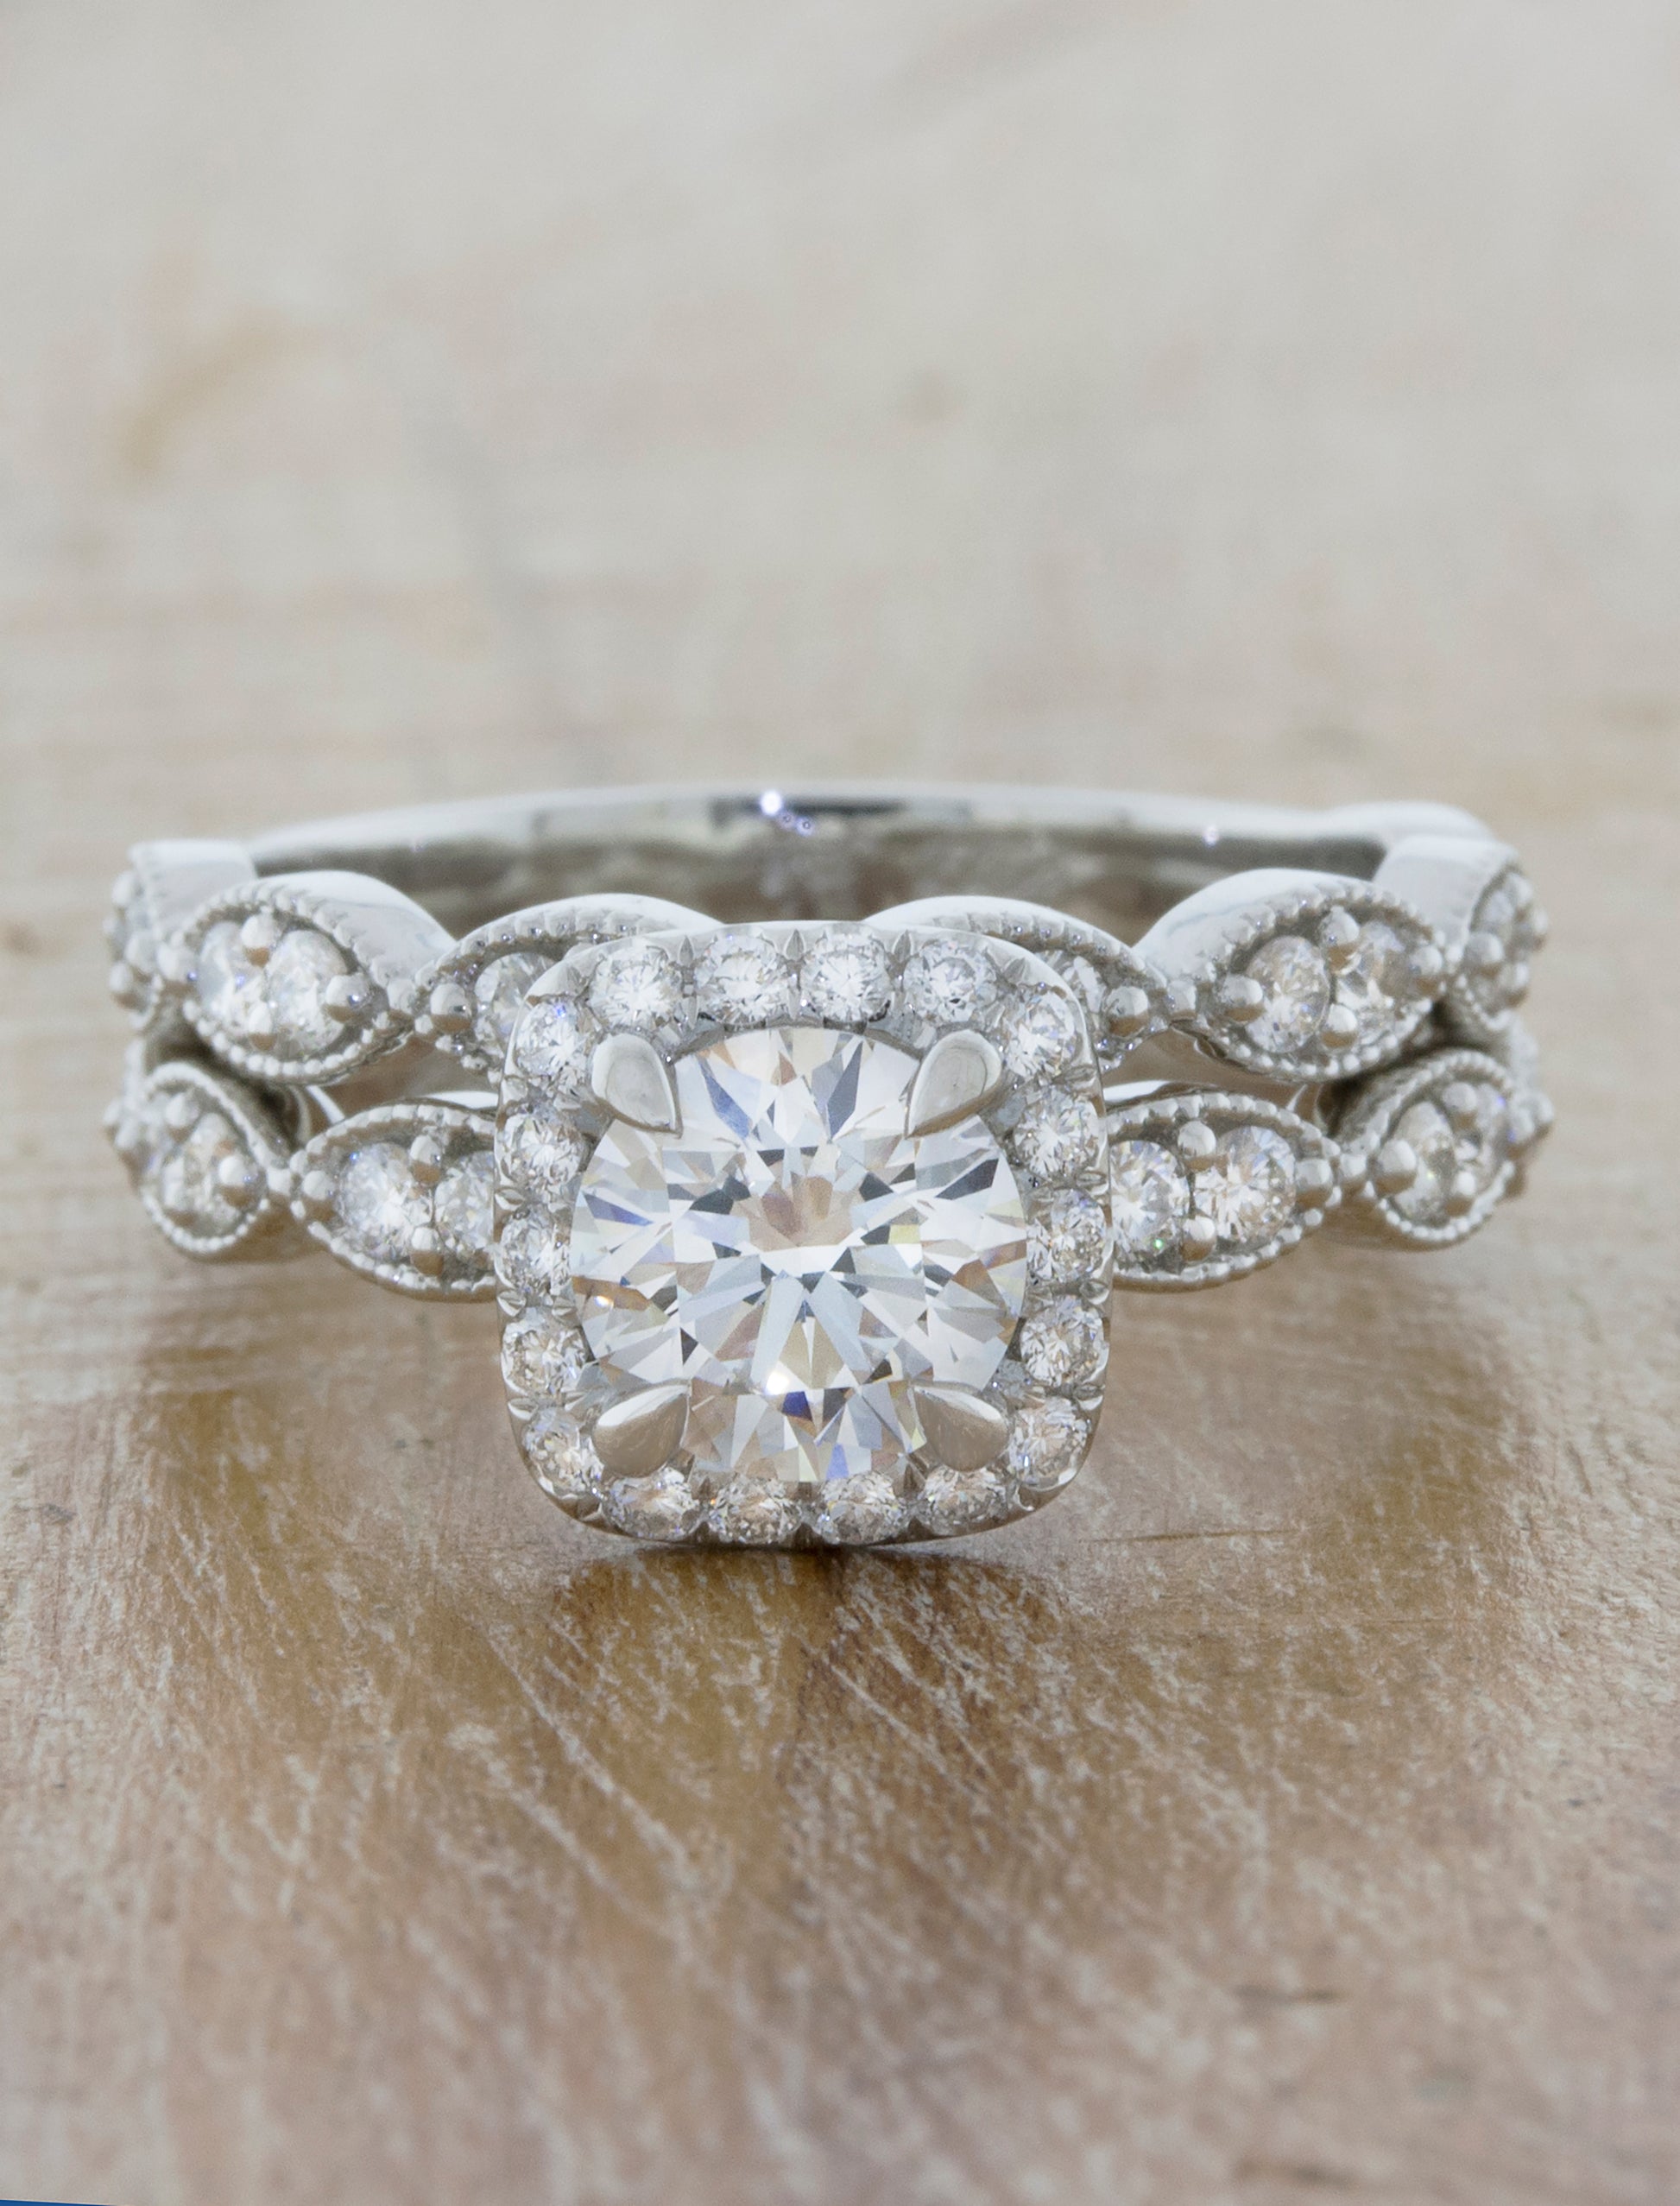 Vintage Inspired Wedding Rings